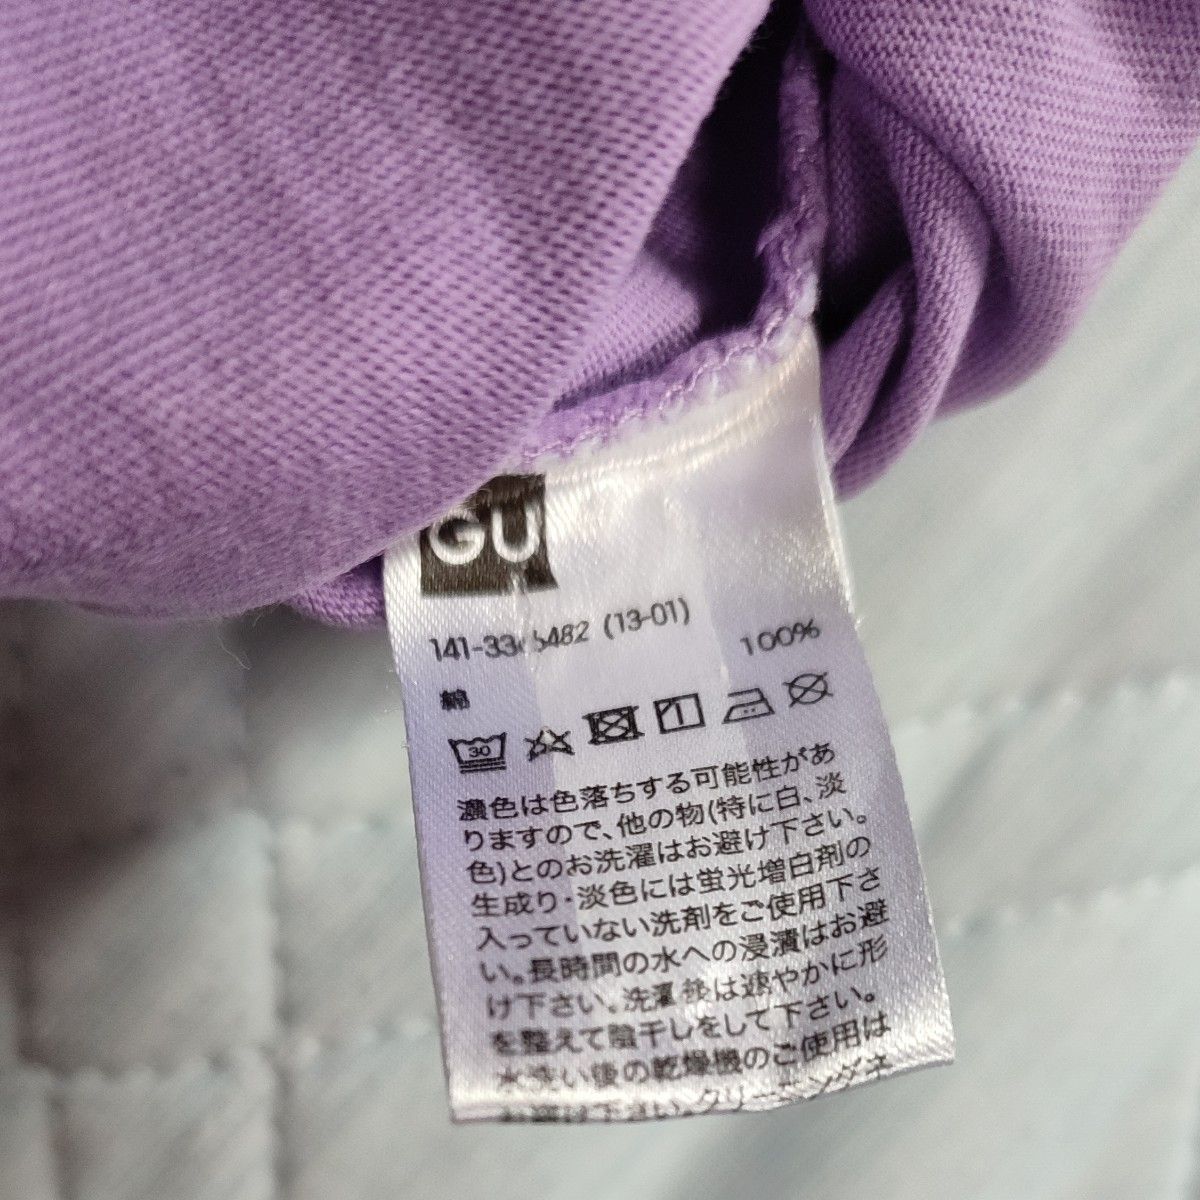 鬼滅の刃 しのぶ 紫色半袖Tシャツ 140サイズ